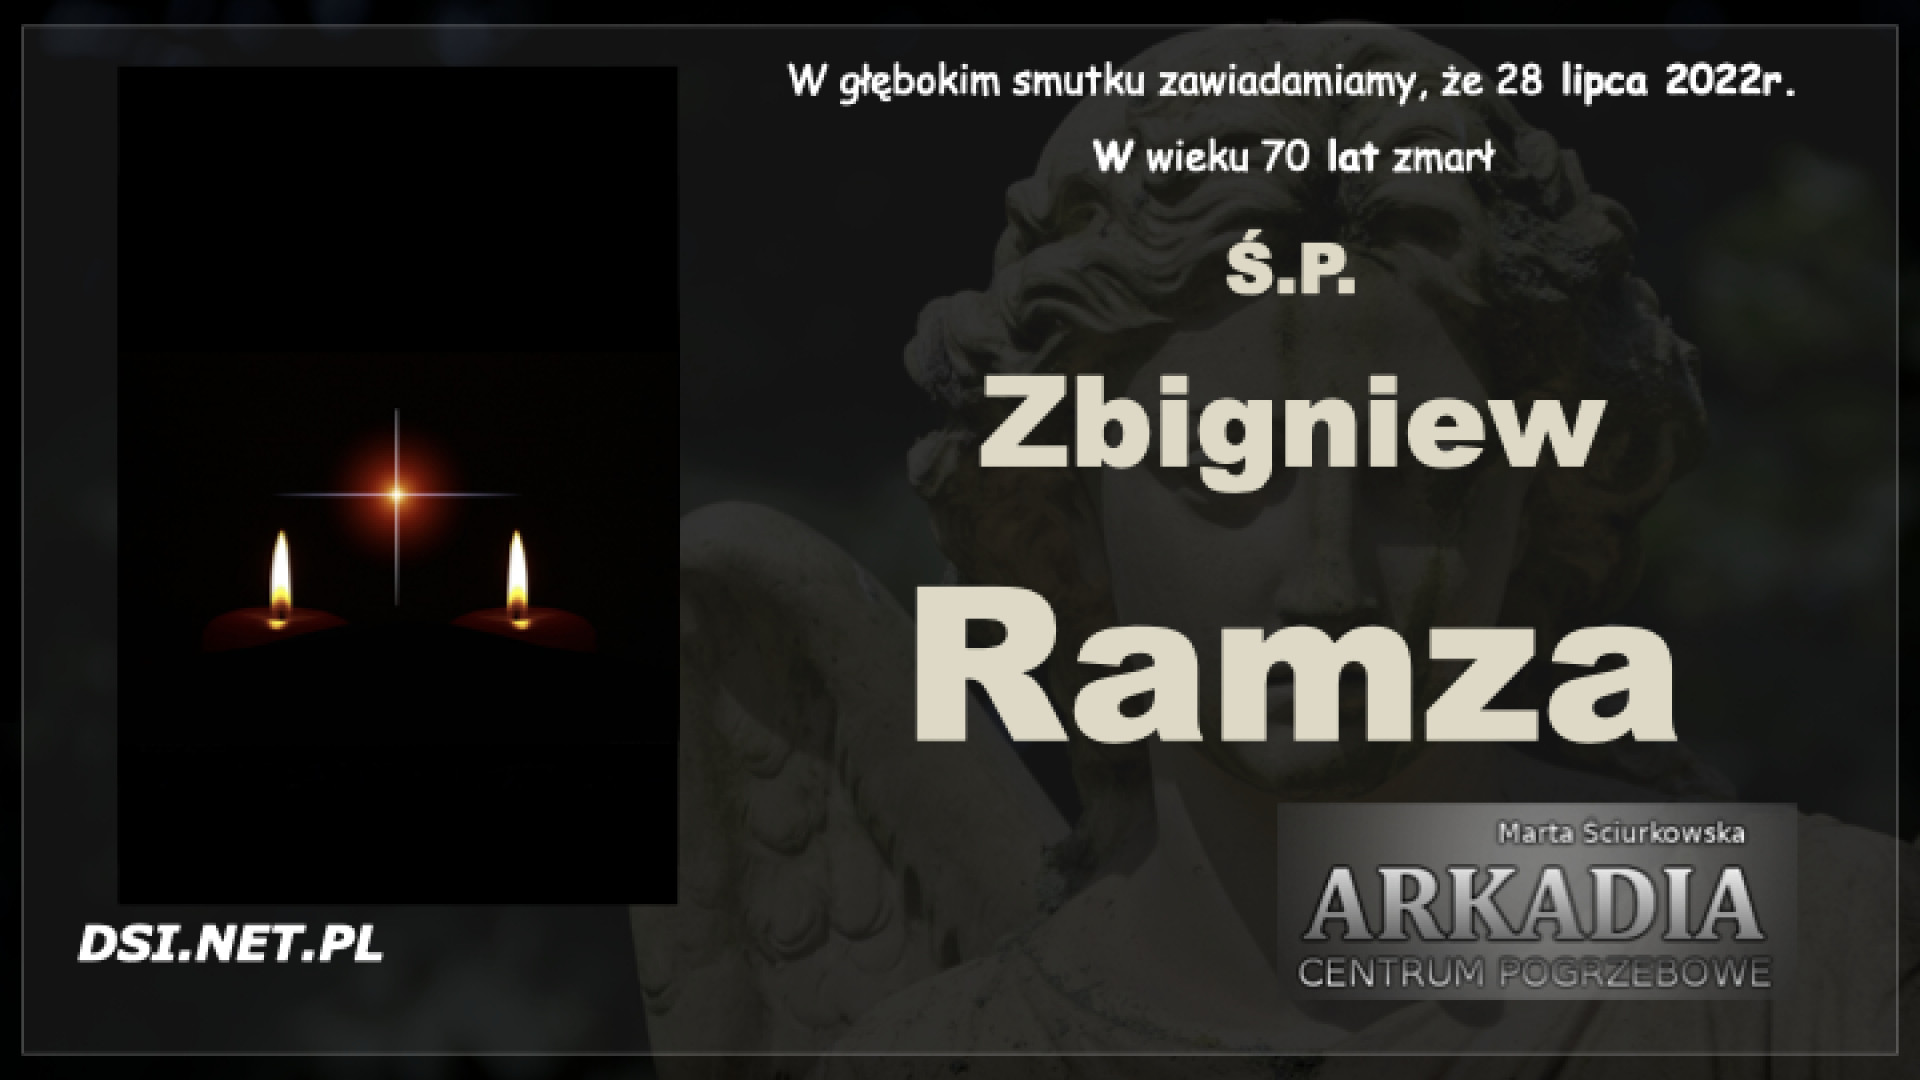 Ś.P. Zbigniew Ramza